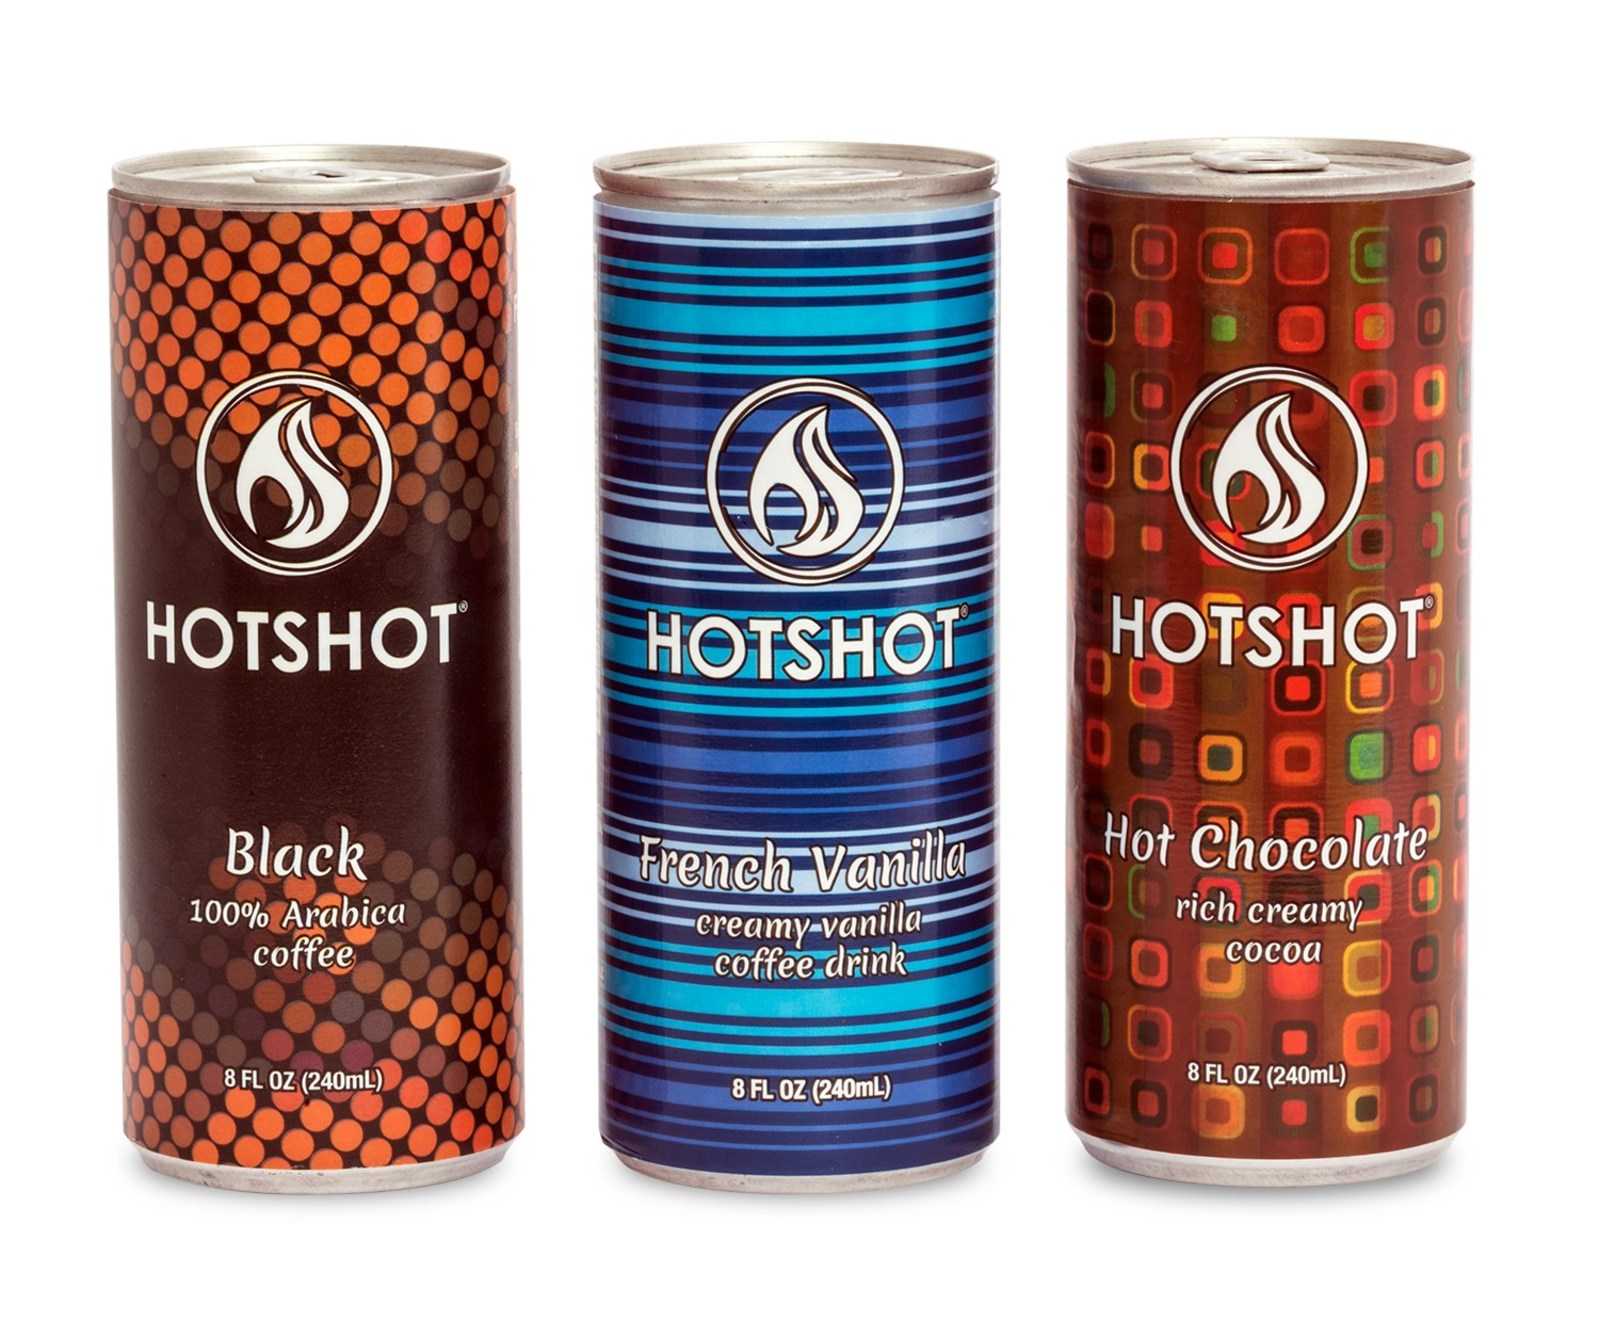 Coffee is hottest. Hotshot Coffee. Hot Black кофе. Hot shot напиток. Кофейня хот Блэк Щелково.